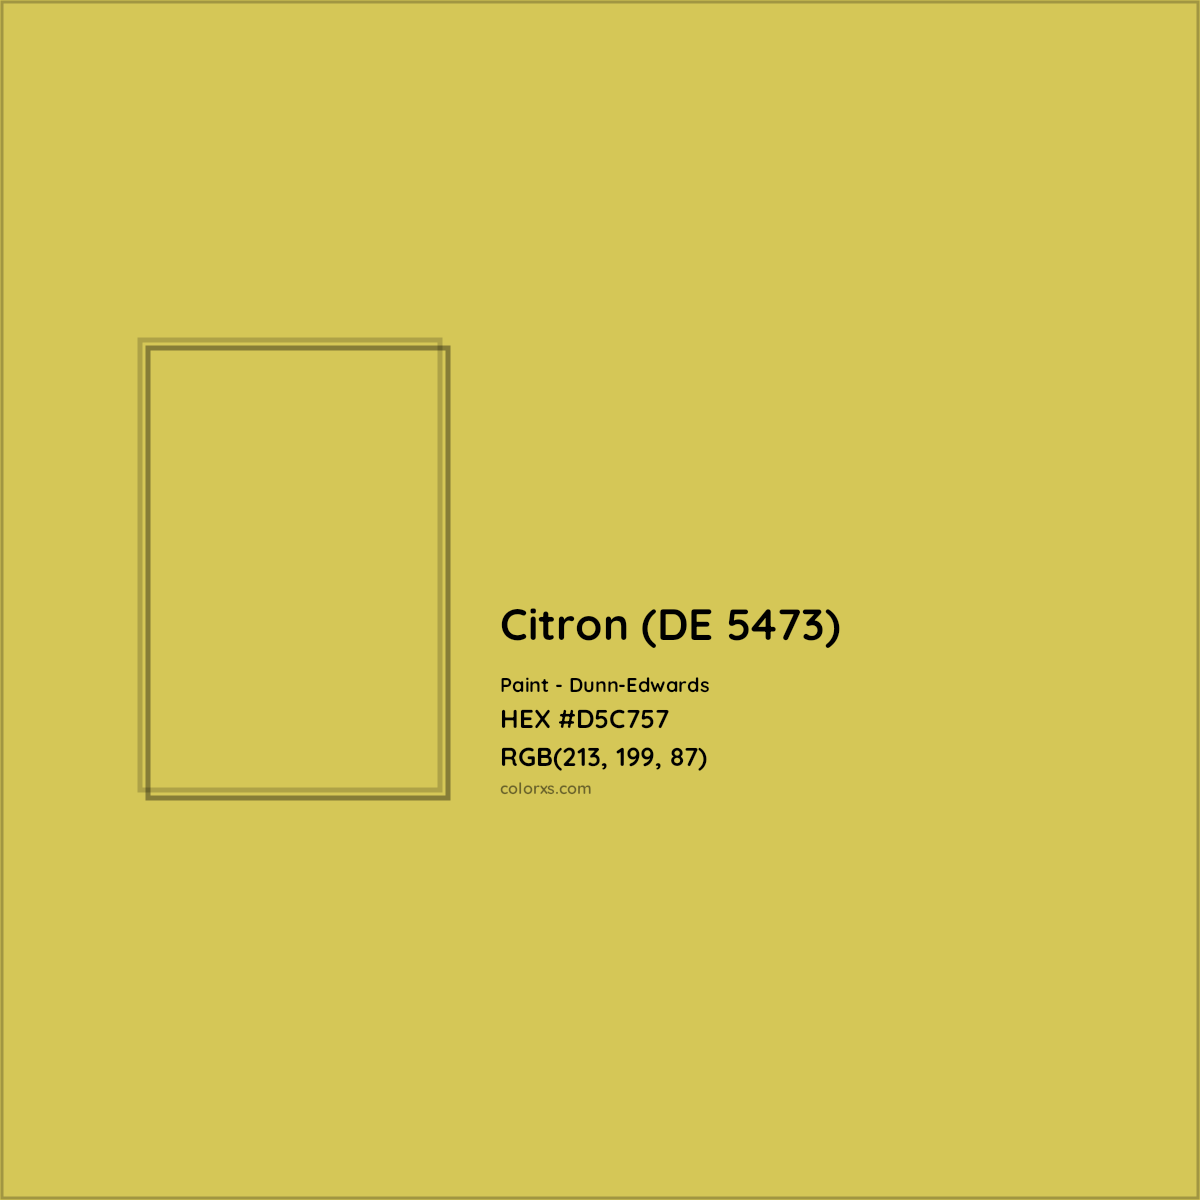 HEX #D5C757 Citron (DE 5473) Paint Dunn-Edwards - Color Code